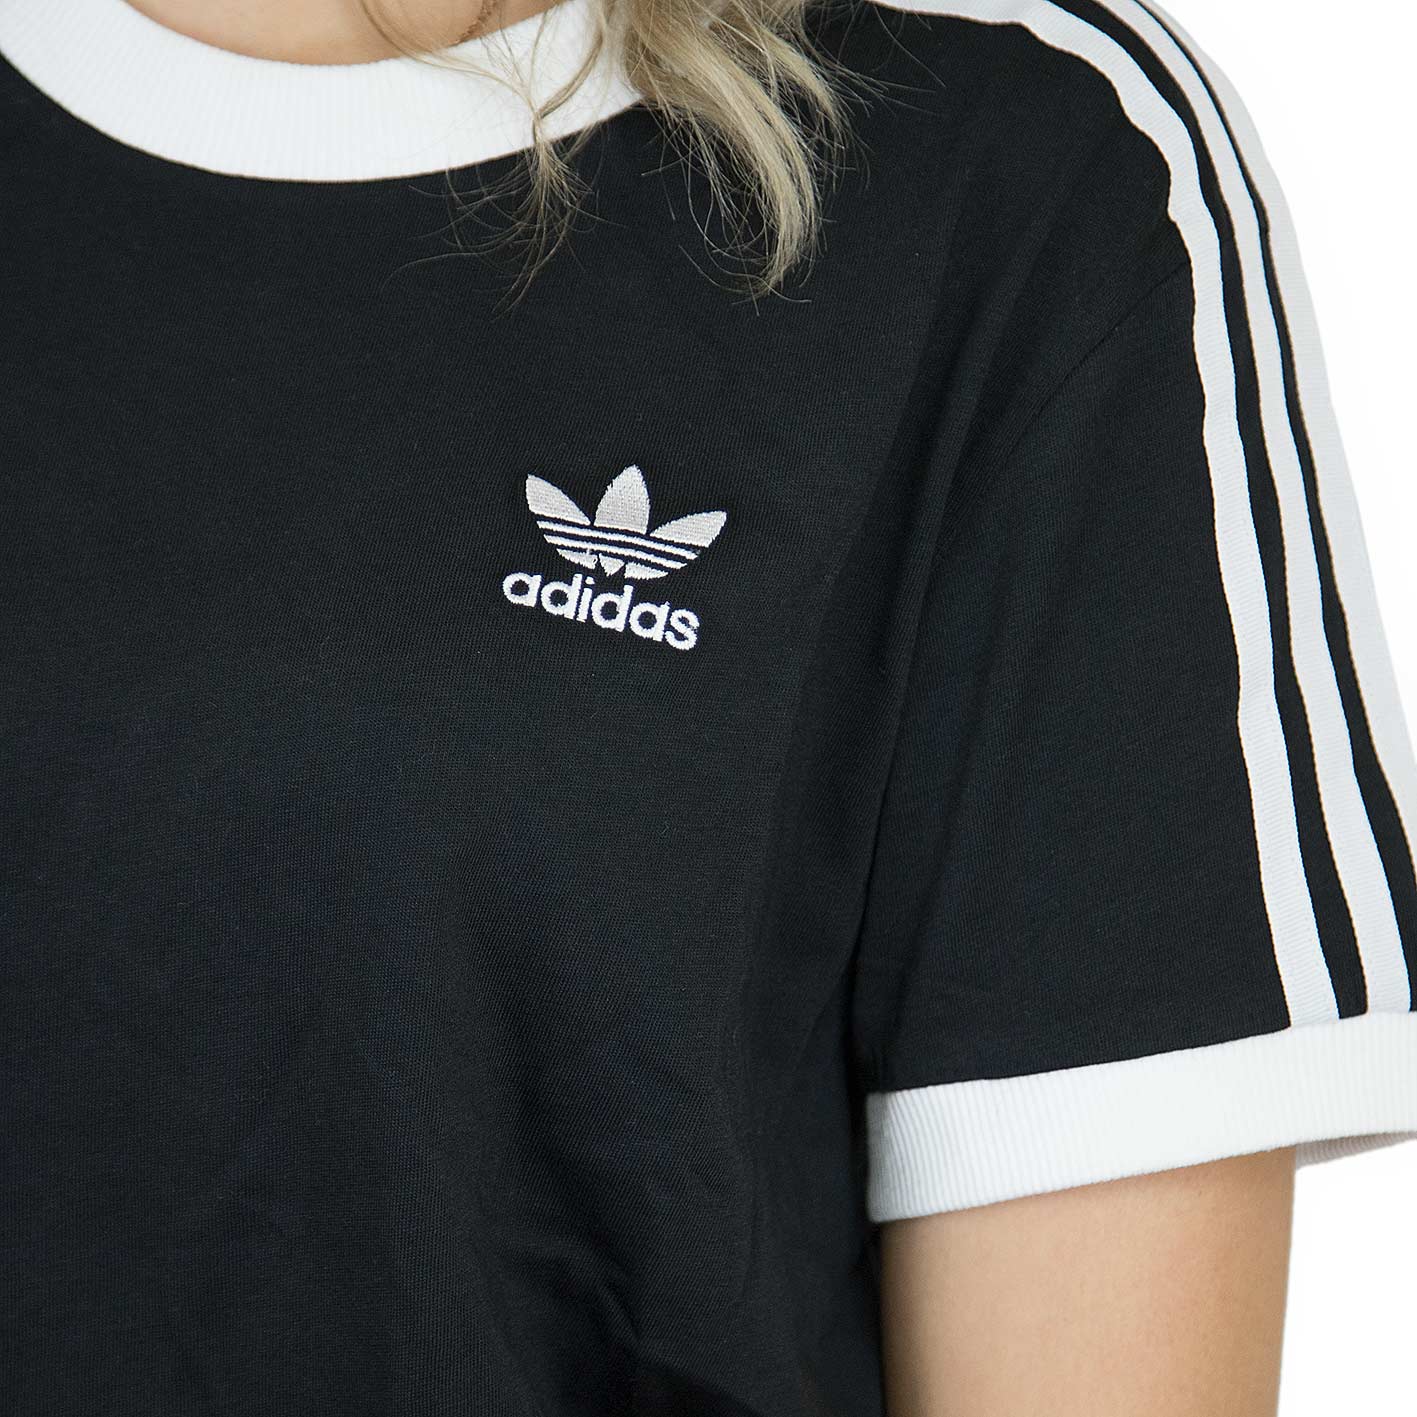 ☆ Adidas Originals Damen T-Shirt 3 Stripes schwarz/weiß - hier bestellen!